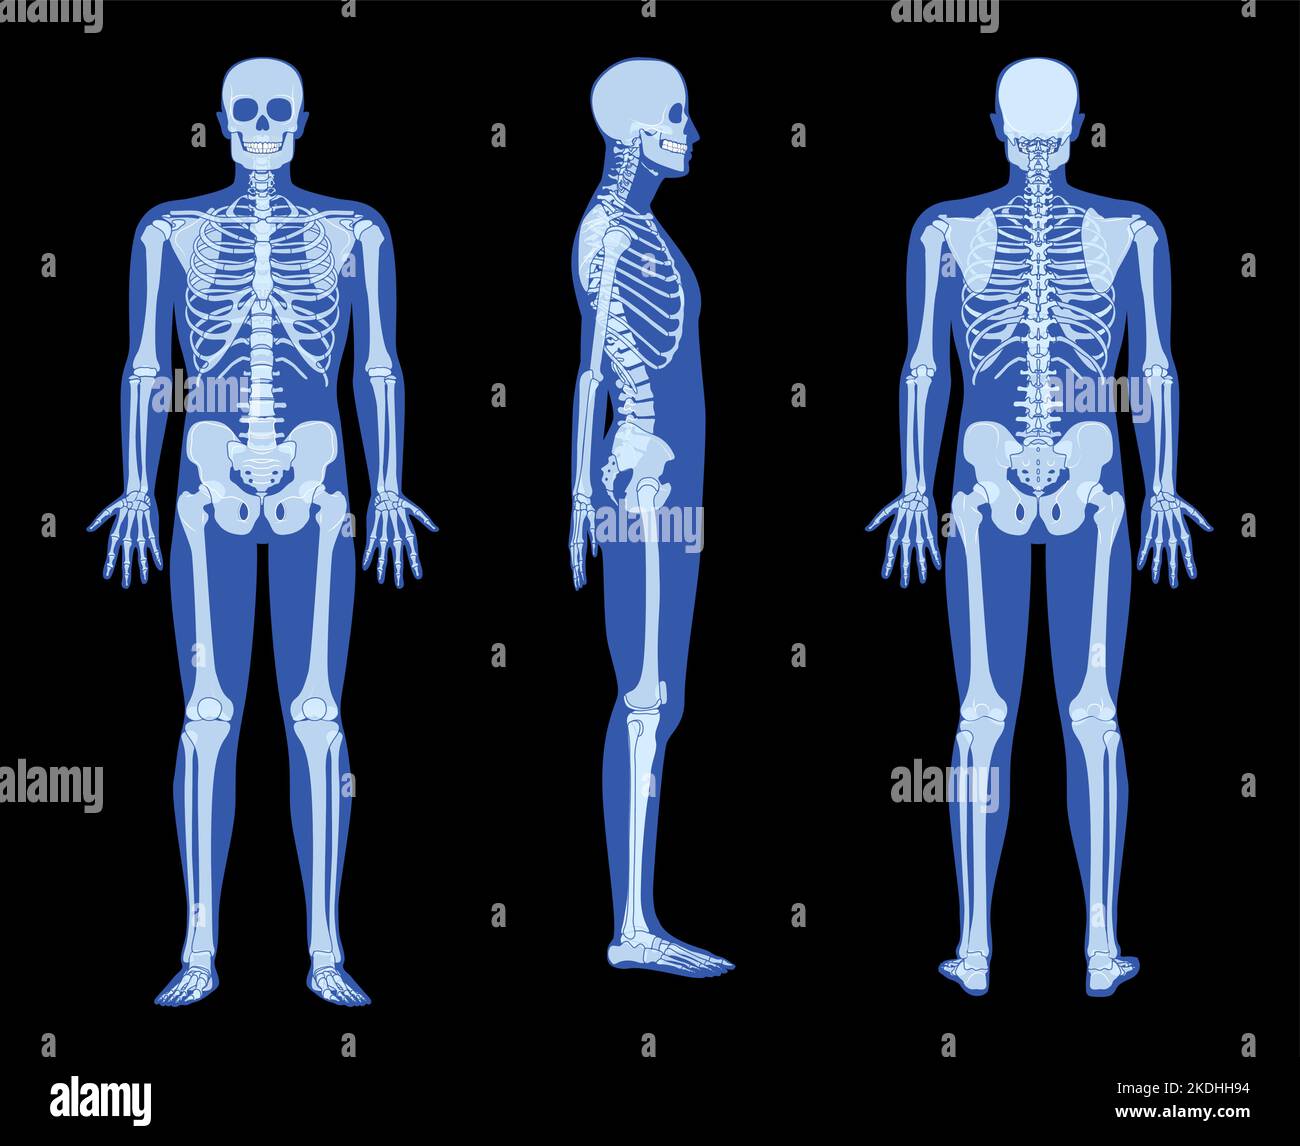 Set Röntgenskelett menschlicher Körper - Hände, Beine, Brust, Köpfe, Wirbel, Knochen Erwachsene Menschen roentgen Vorderrückseite Ansicht. 3D realistische flache blaue Farbe Vektor-Illustration der medizinischen Anatomie isoliert Stock Vektor